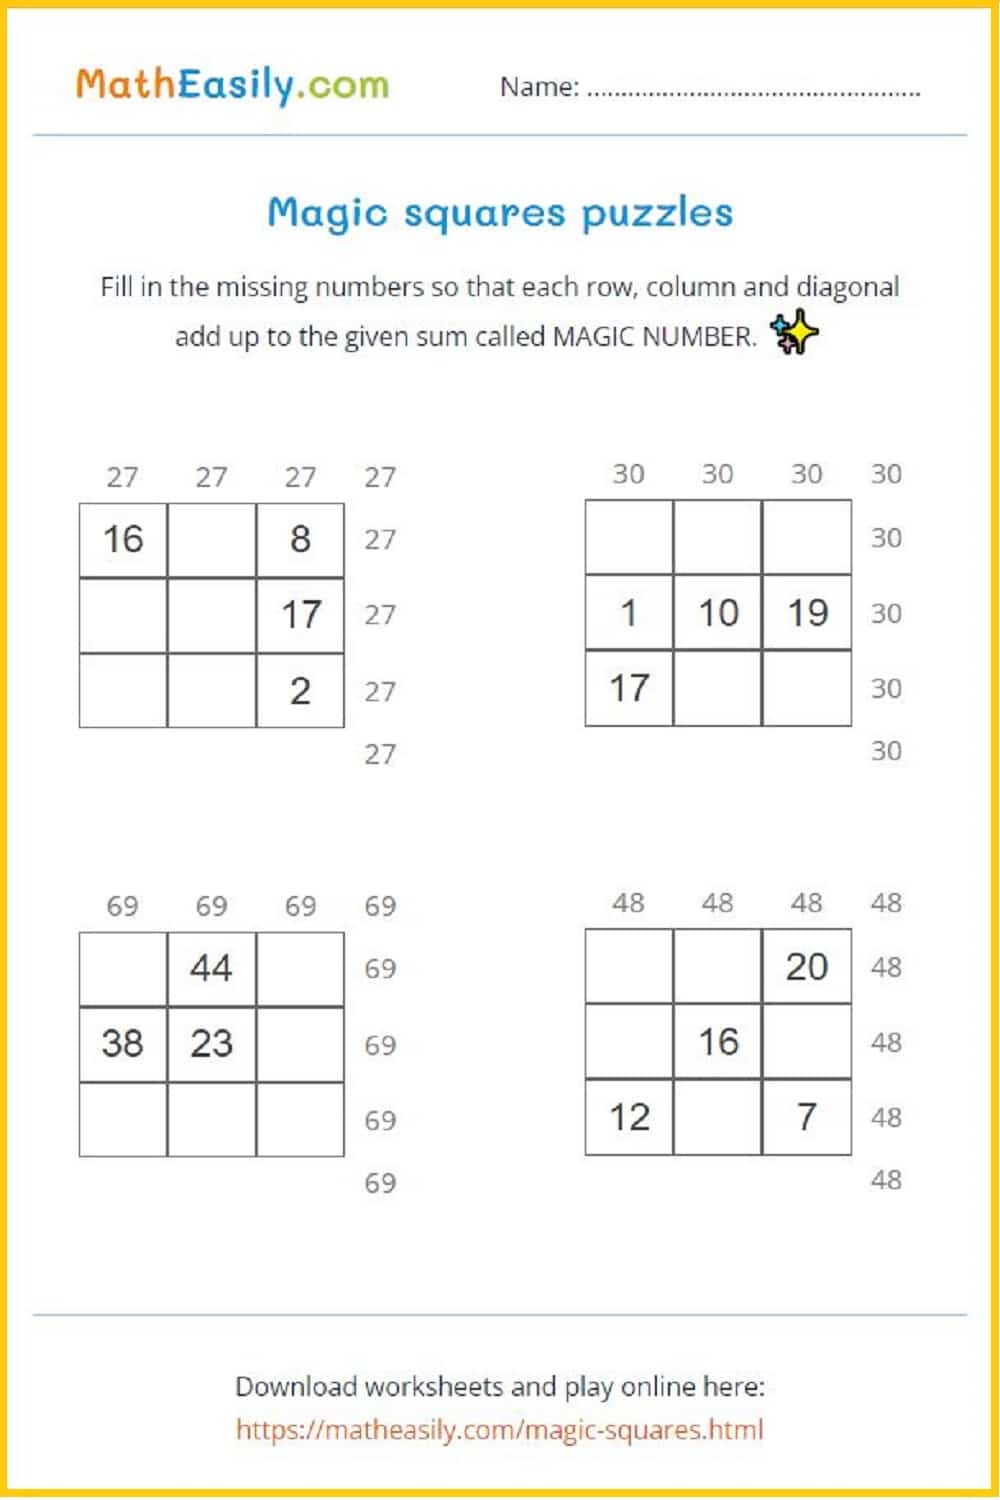 Number games printable. Algebra games printable PDF.Free printable math games for kids. Free printable math games PDF.